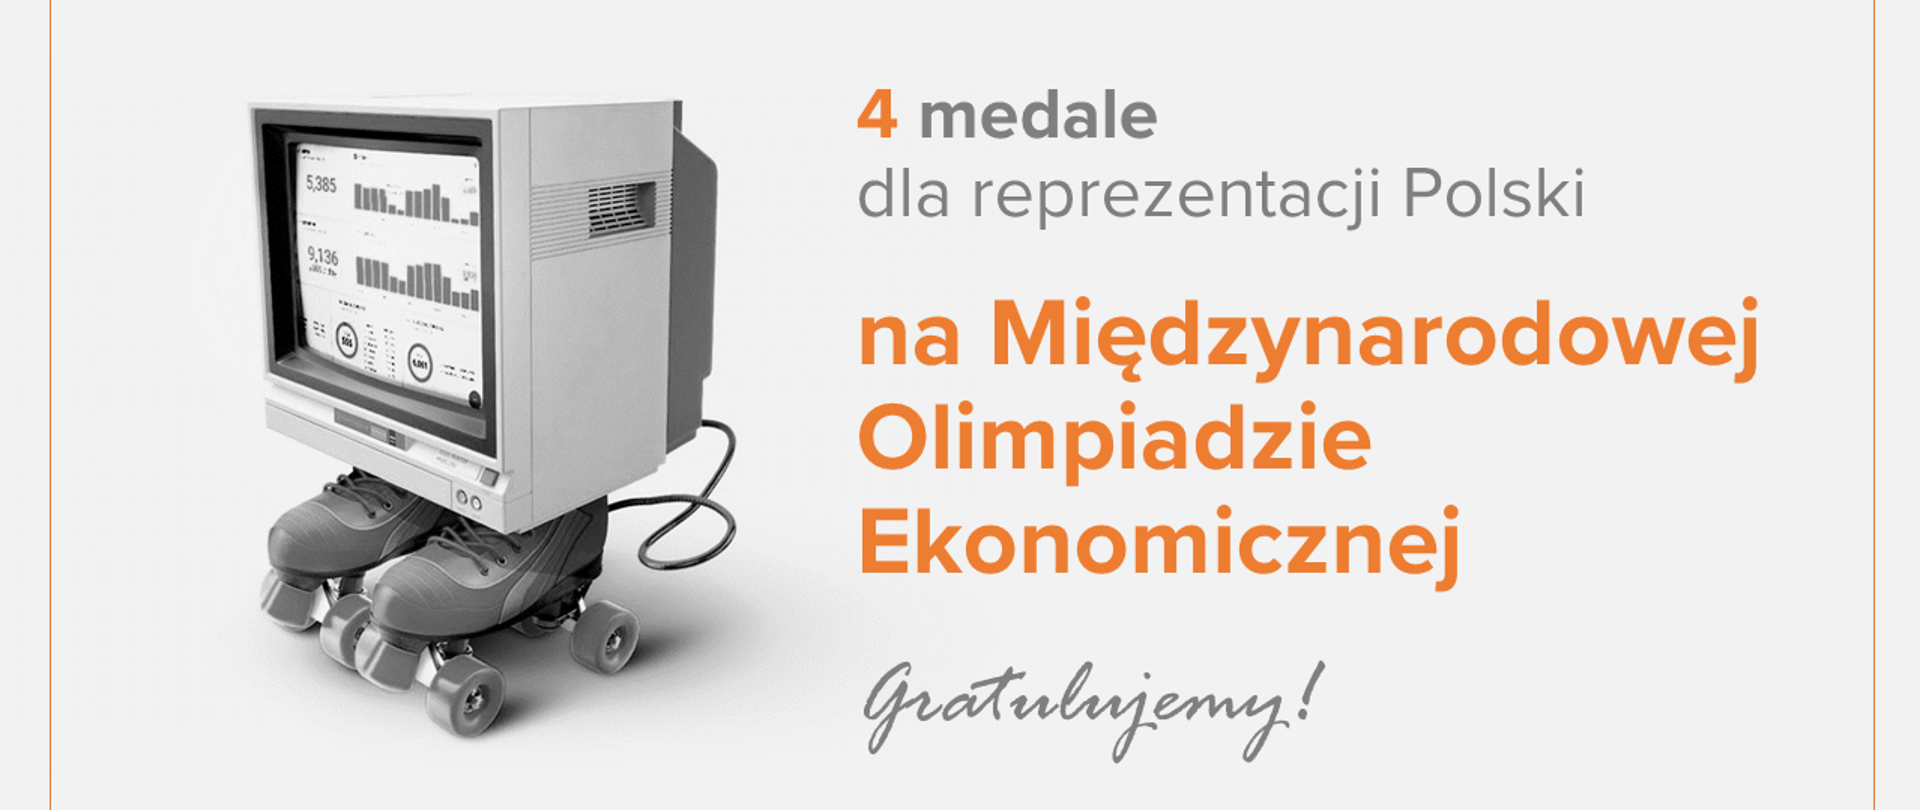 Jasnoszara grafika z ekranem i tekstem "4 medale dla reprezentacji Polski na Międzynarodowej Olimpiadzie Ekonomicznej. Gratulujemy!"